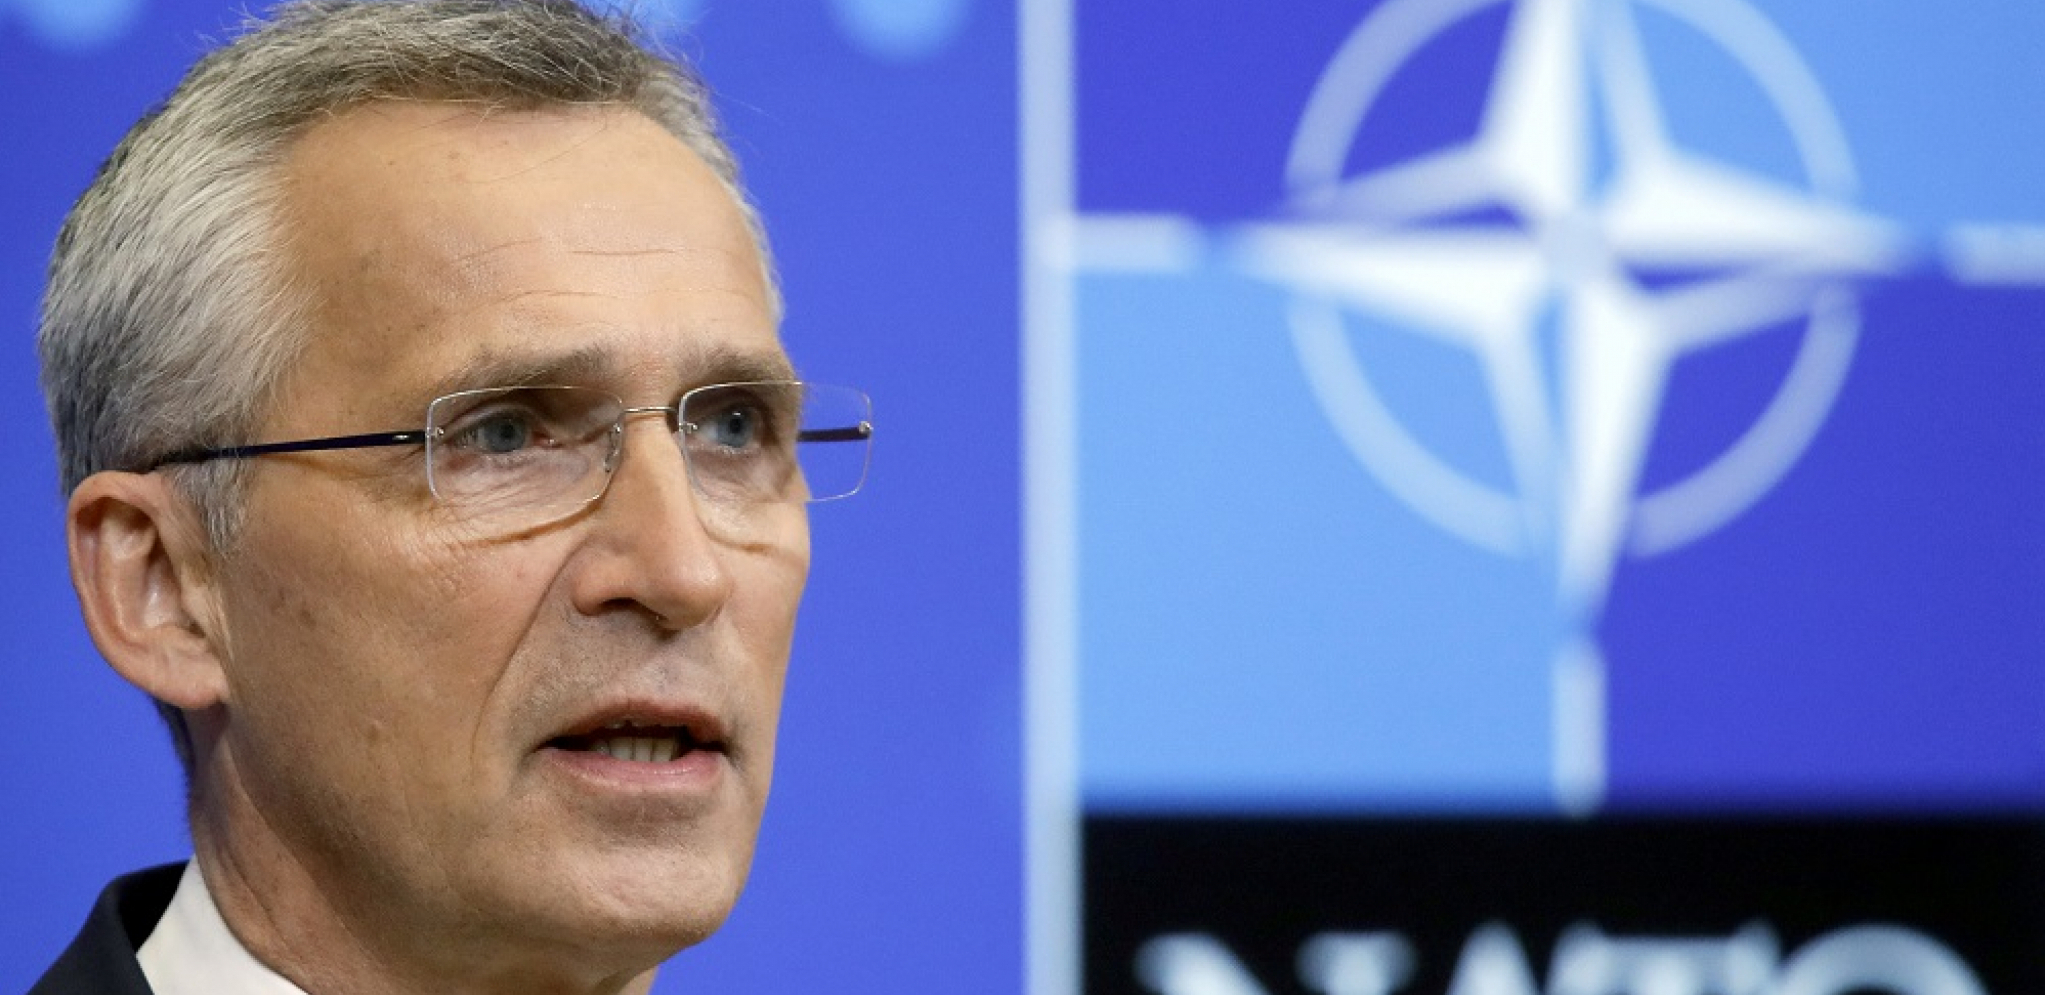 OGLASIO SE NATO "Pomažemo Ukrajini, ima pravo na samoodbranu"